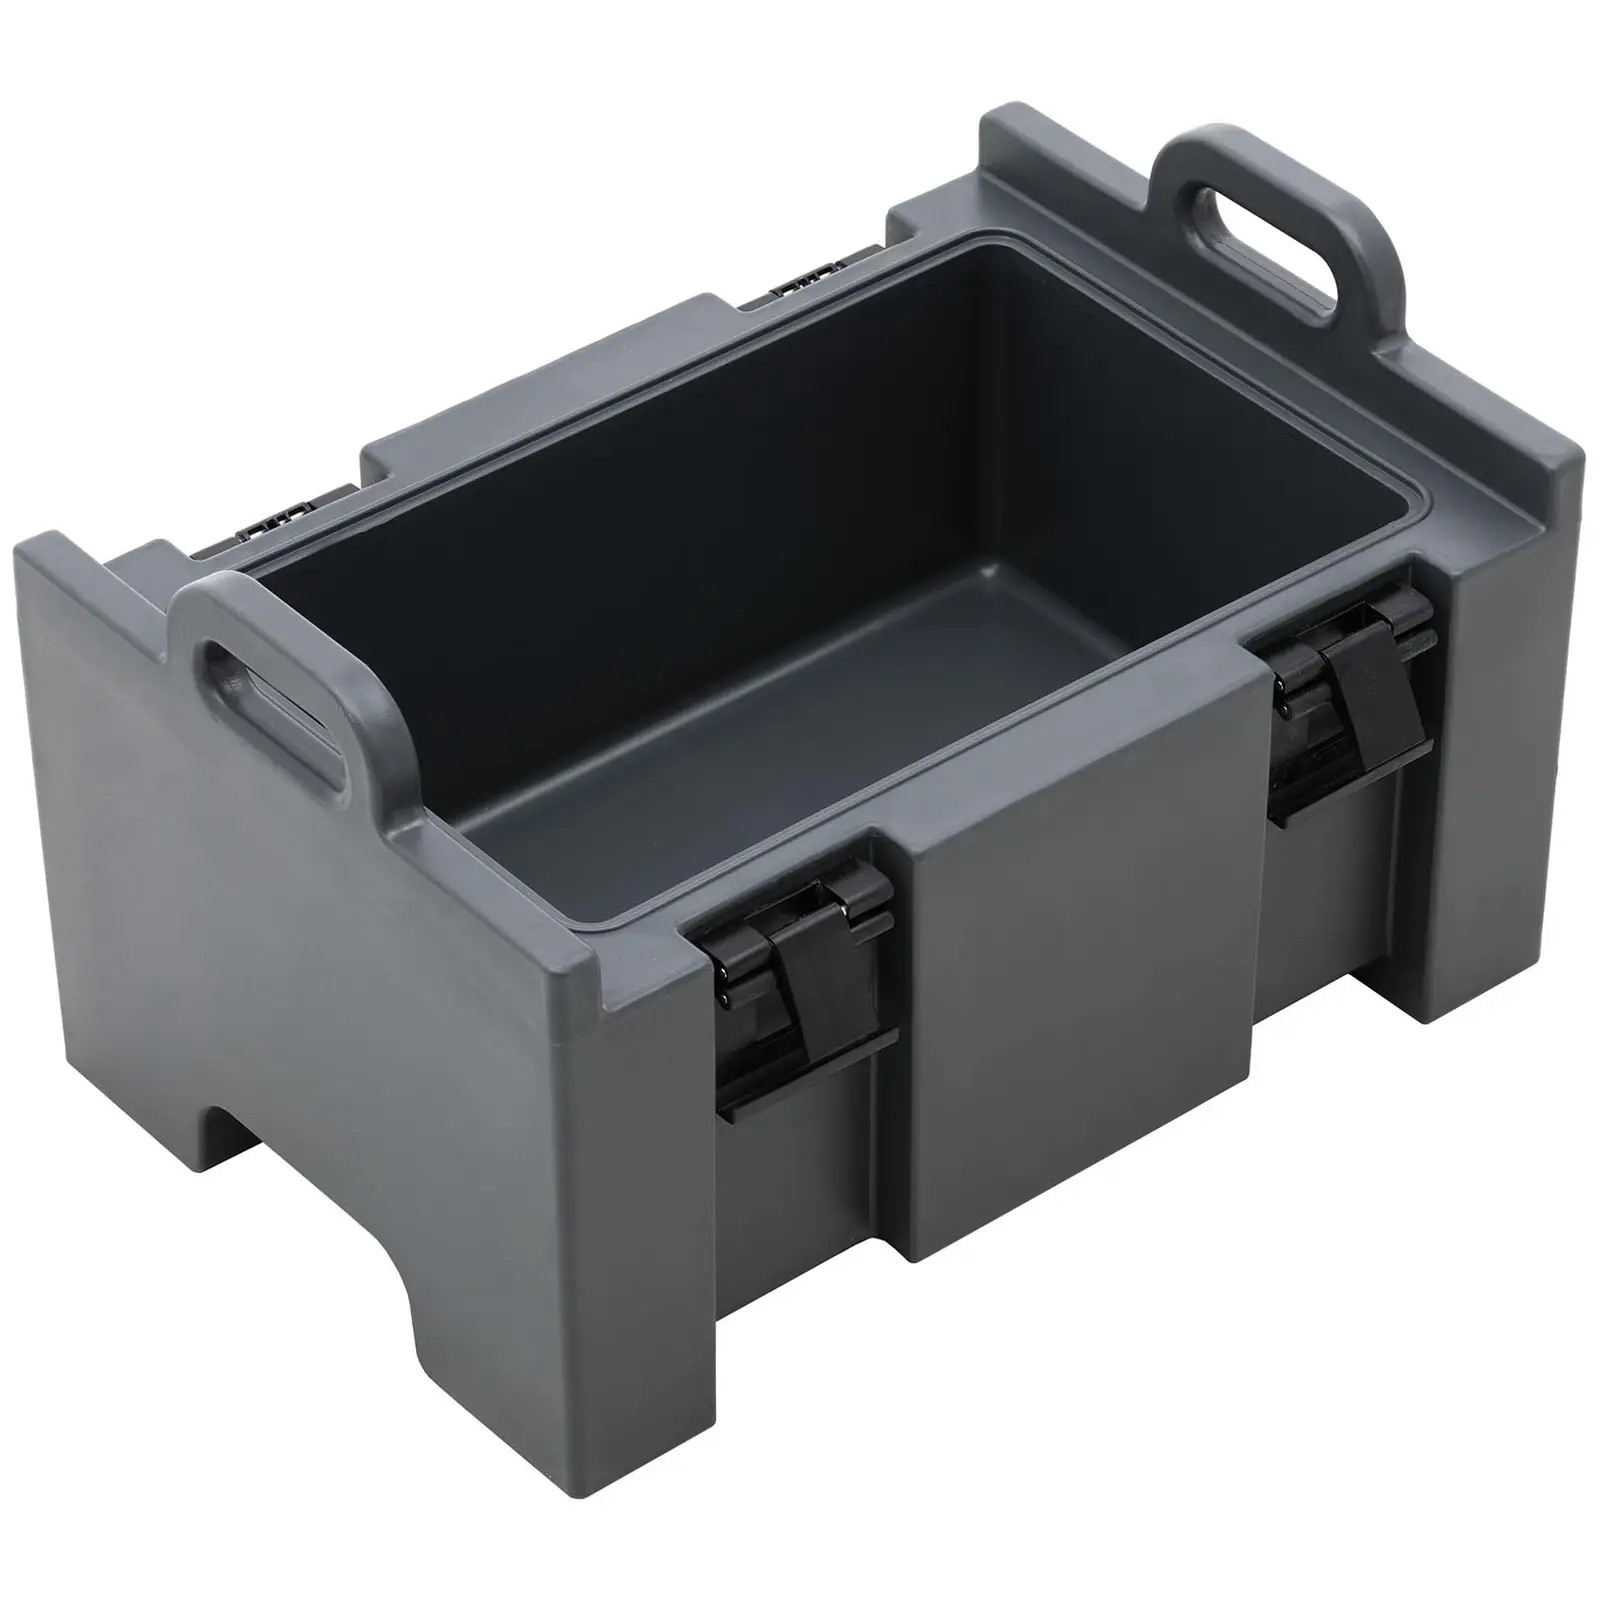 Thermobox - Toplader - für GN 1/1 Behälter (15 - 20 cm tief) - 37 L